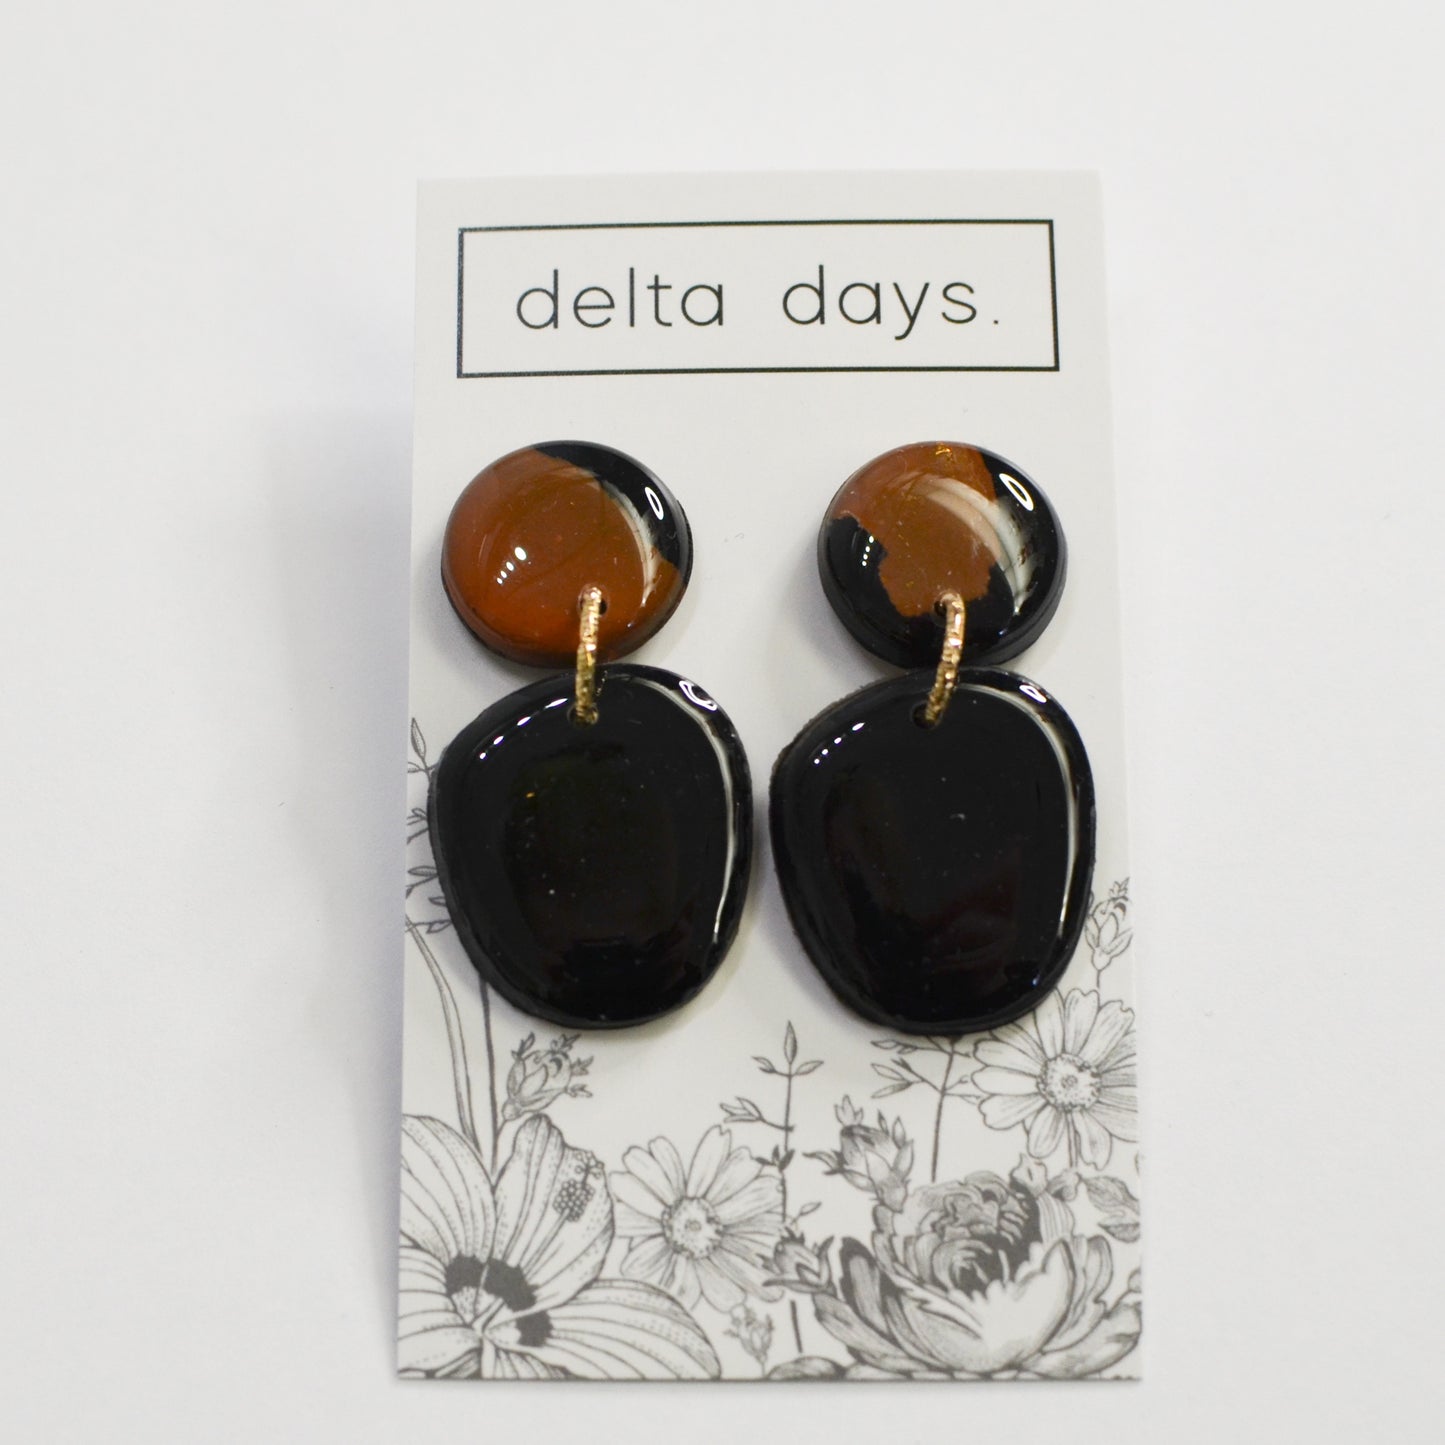 05 Delta Days. X Details - The Details Boutique